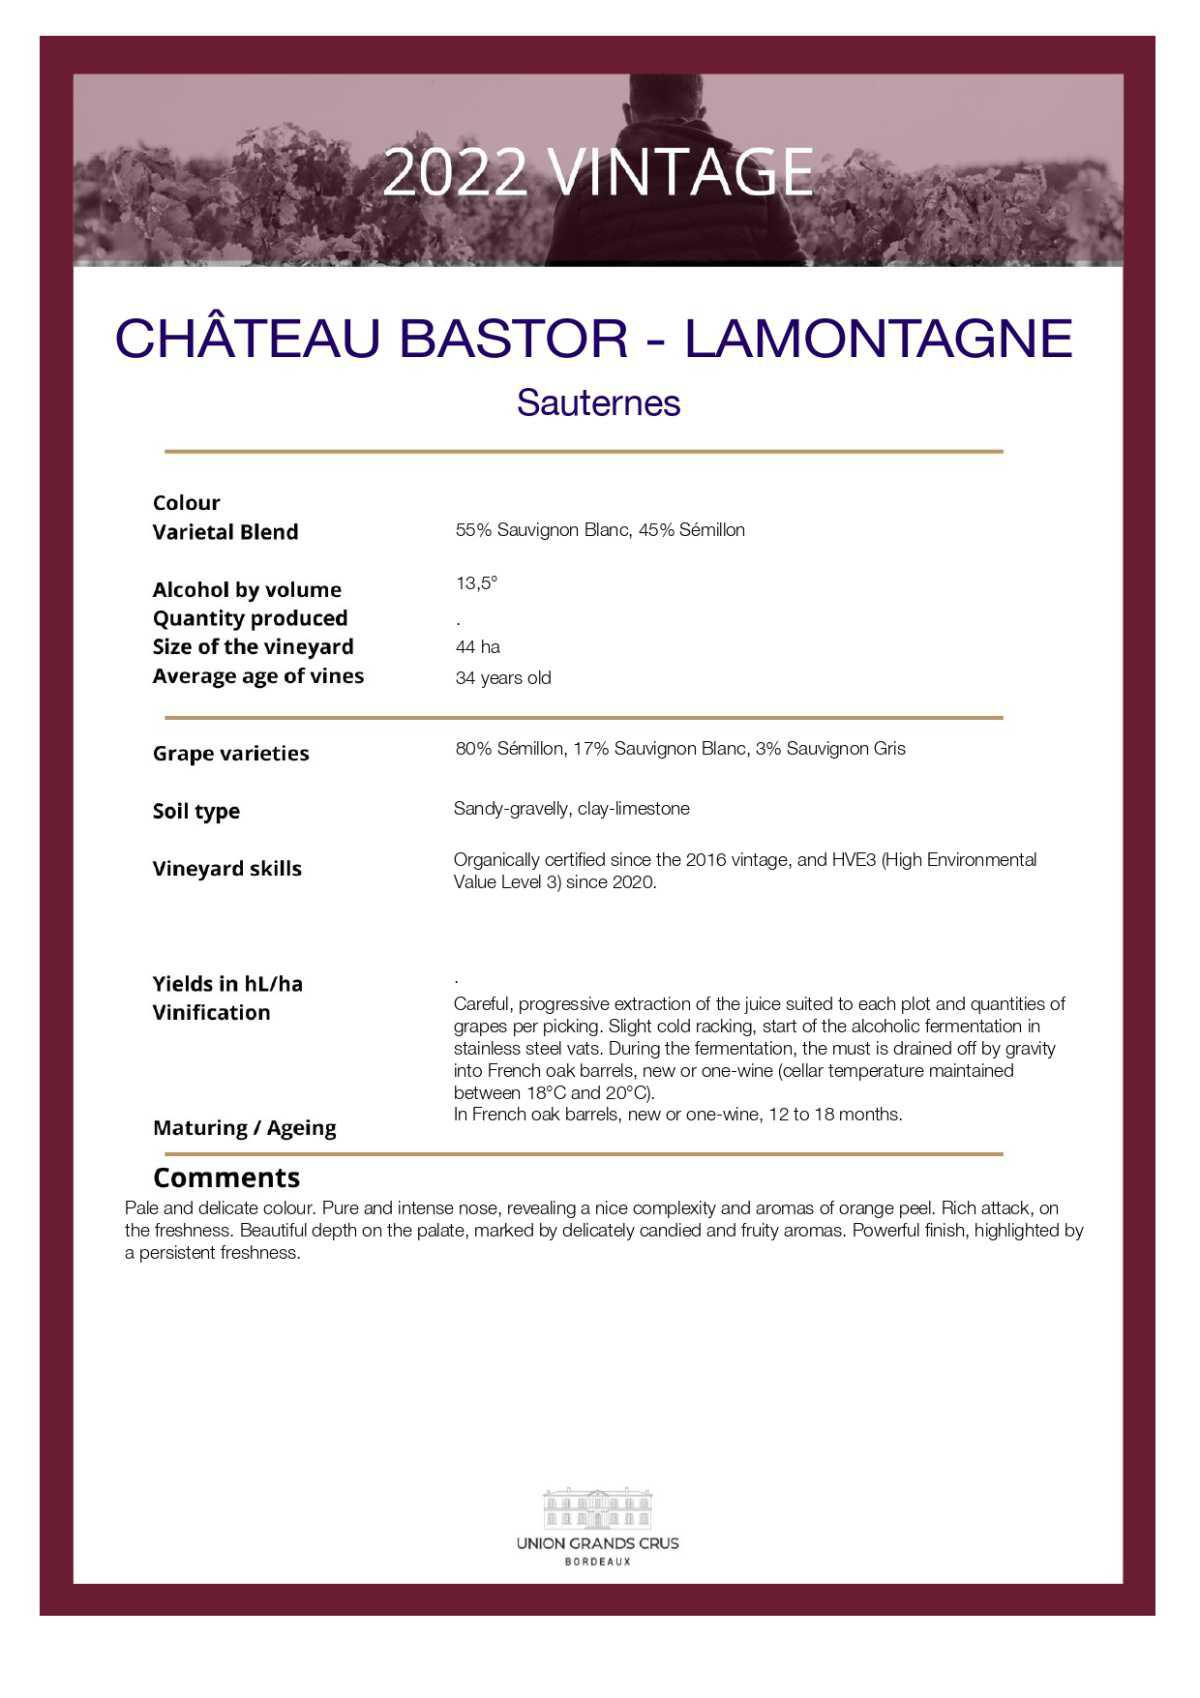  Château Bastor - Lamontagne